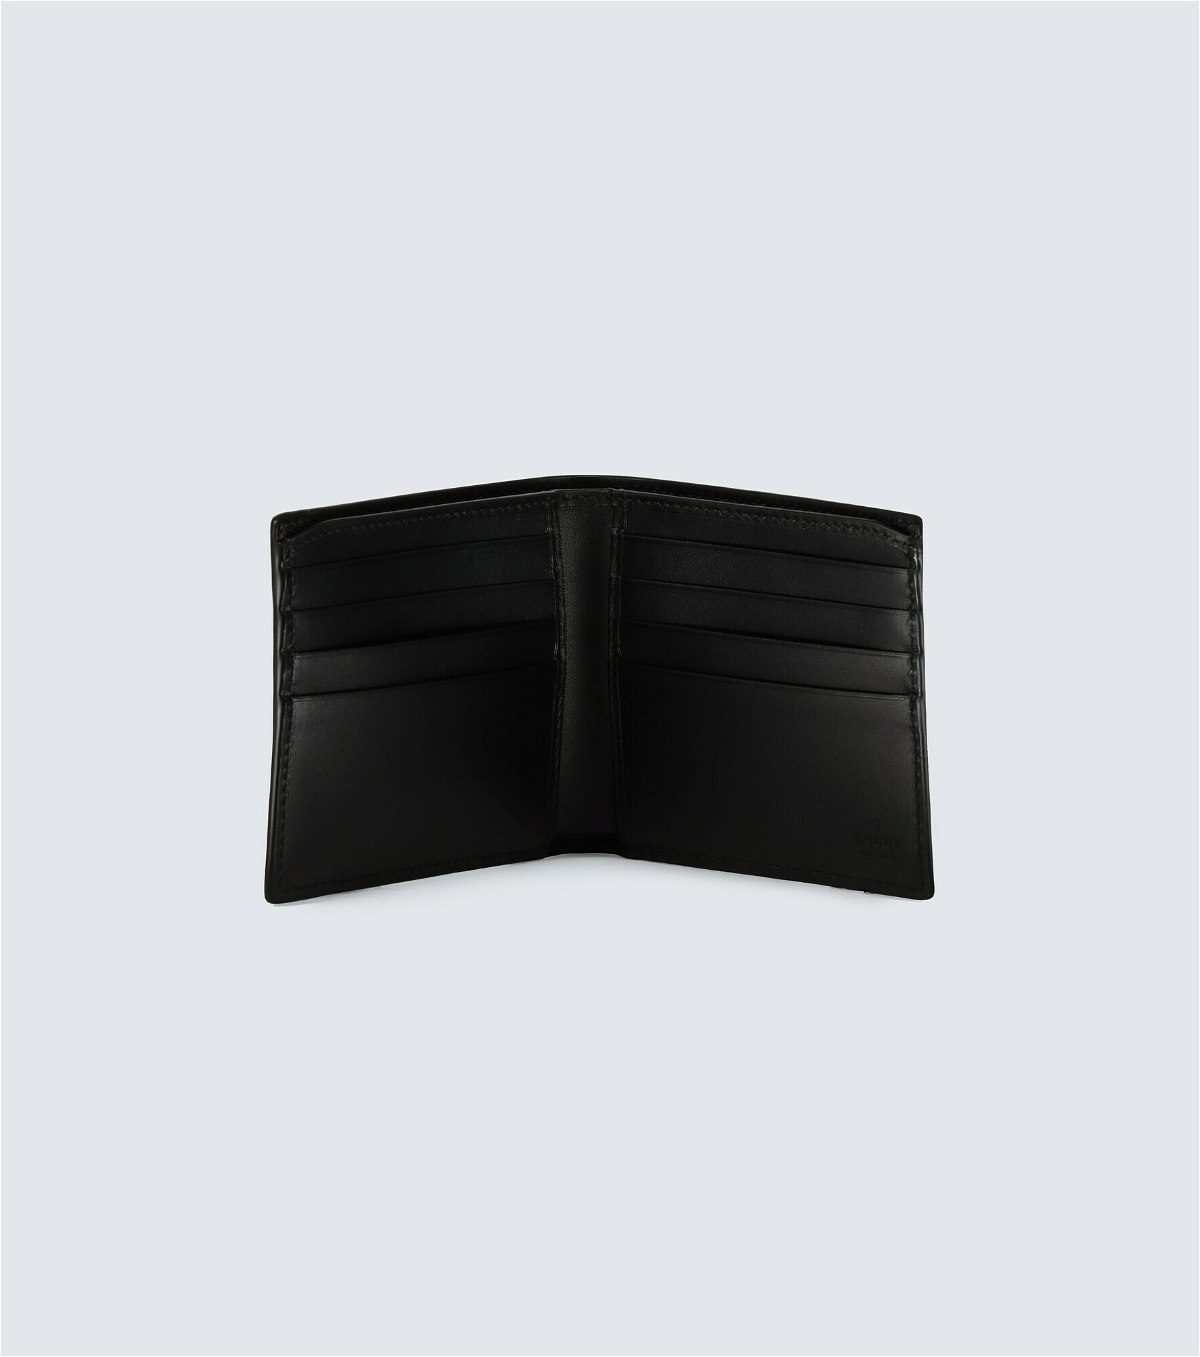 Gucci Kingsnake Print GG Supreme Wallet, Black, GG Canvas